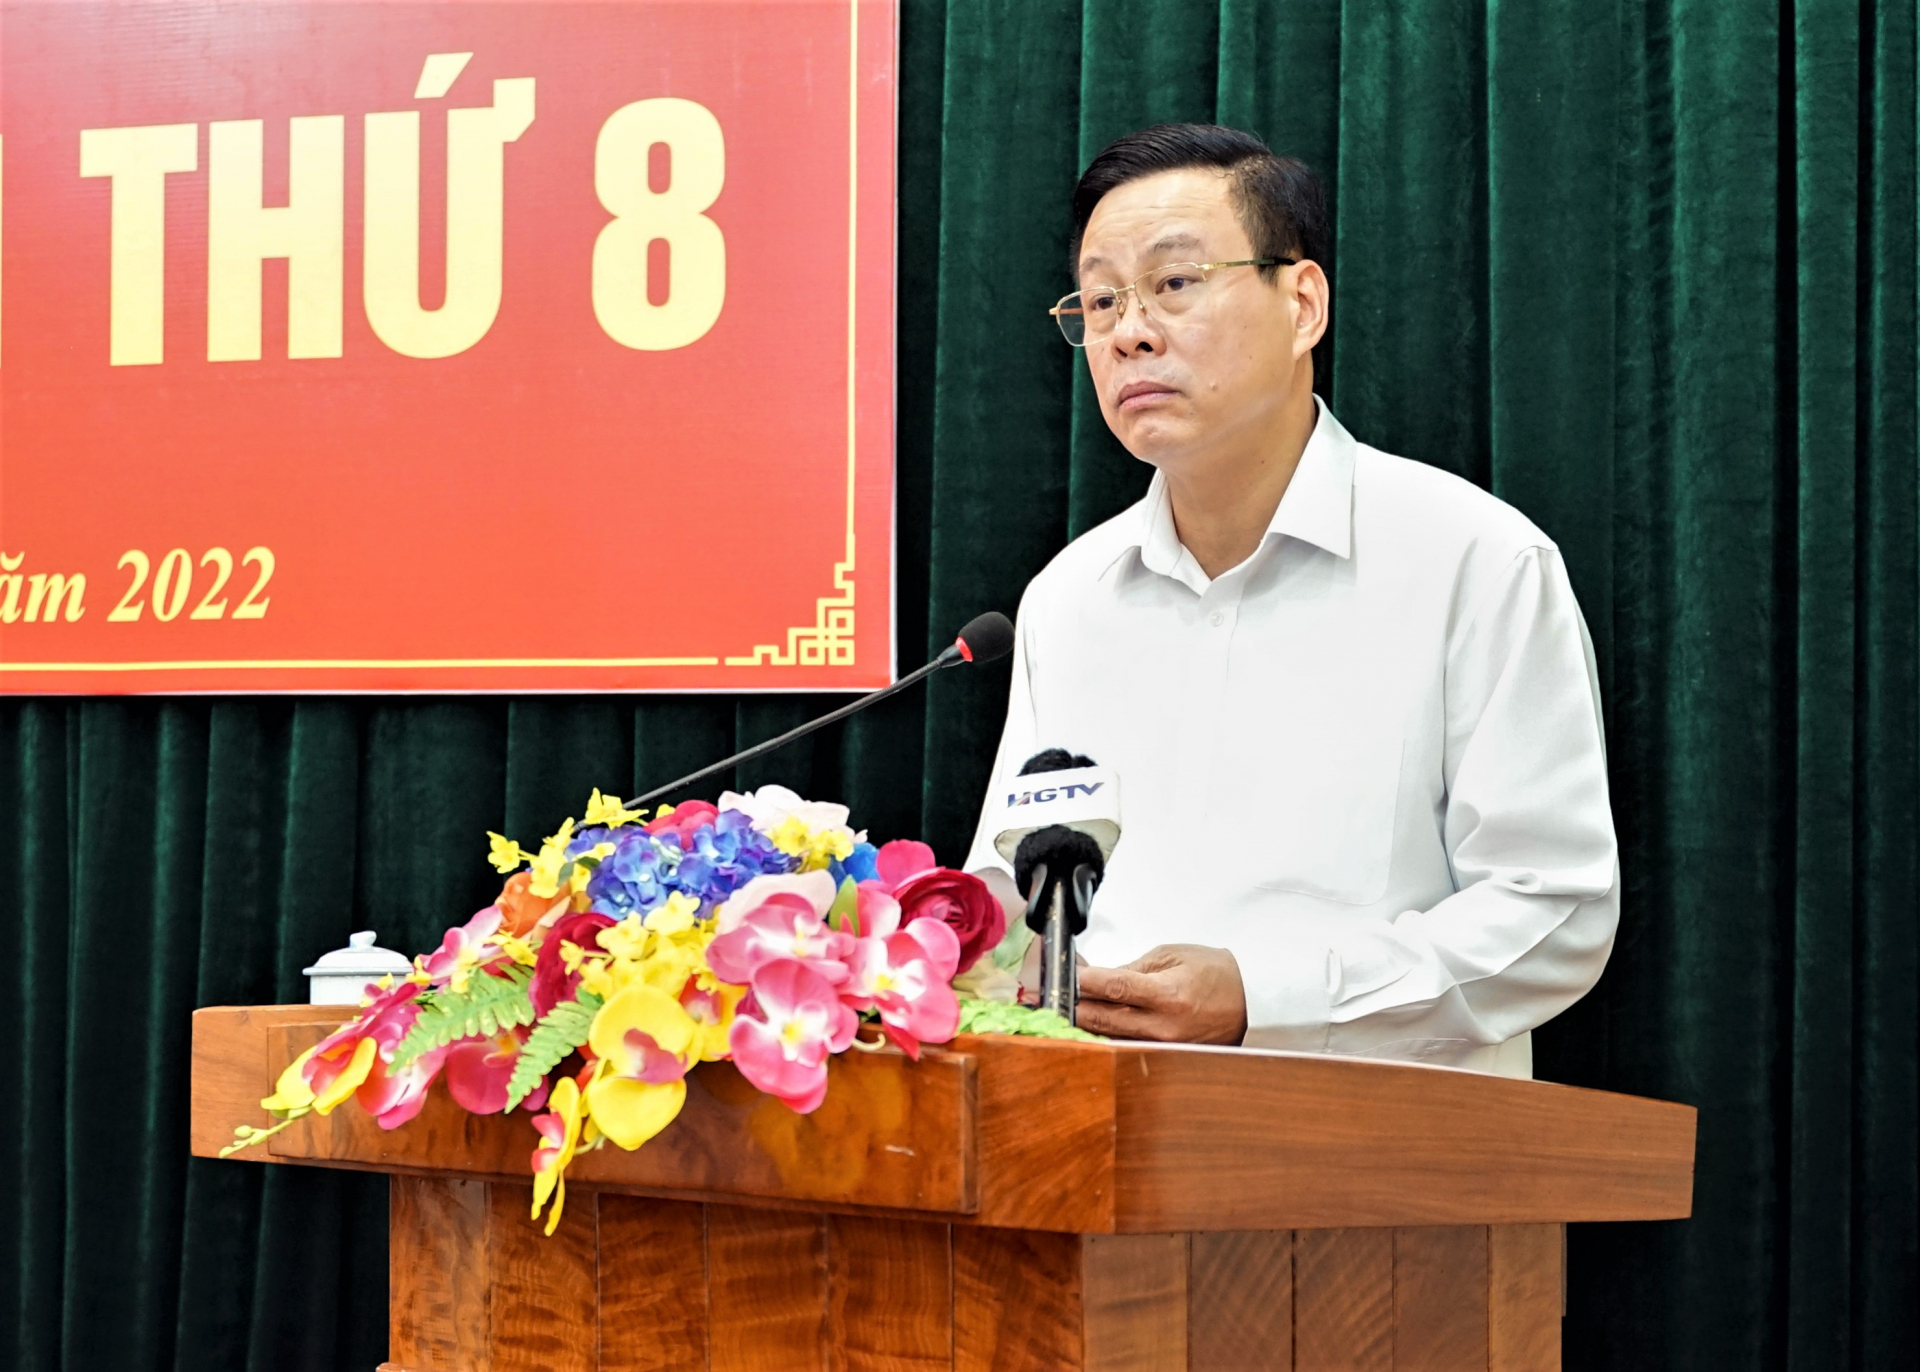 Phó Bí thư Tỉnh ủy, Chủ tịch UBND tỉnh Nguyễn Văn Sơn phát biểu tại hội nghị.